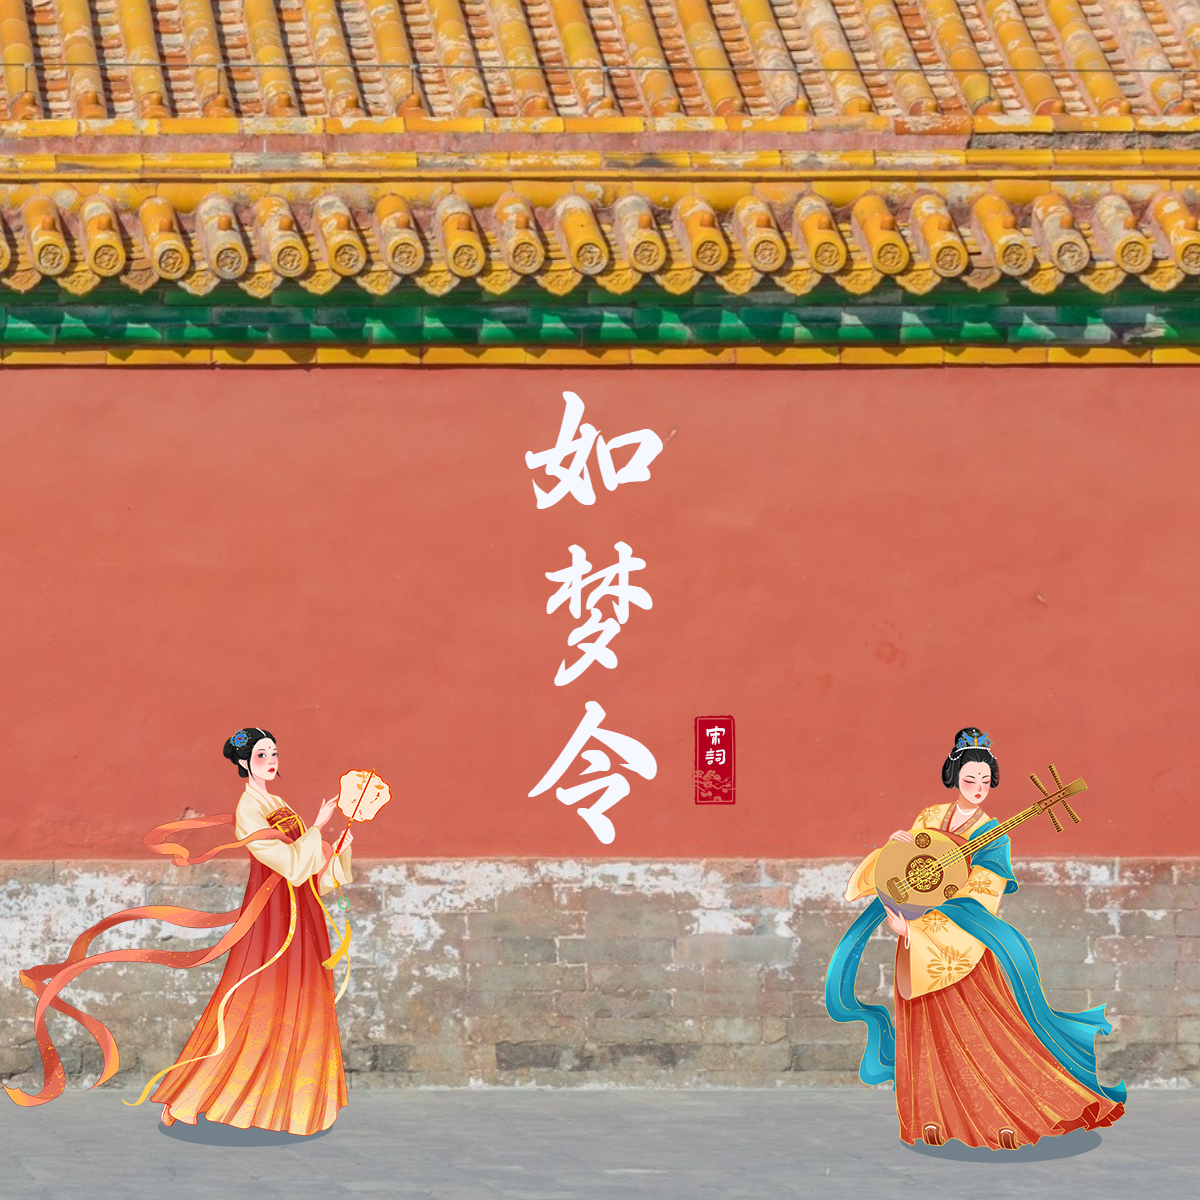 风景中国风古风建筑红墙晒图晒照plog模板预览效果